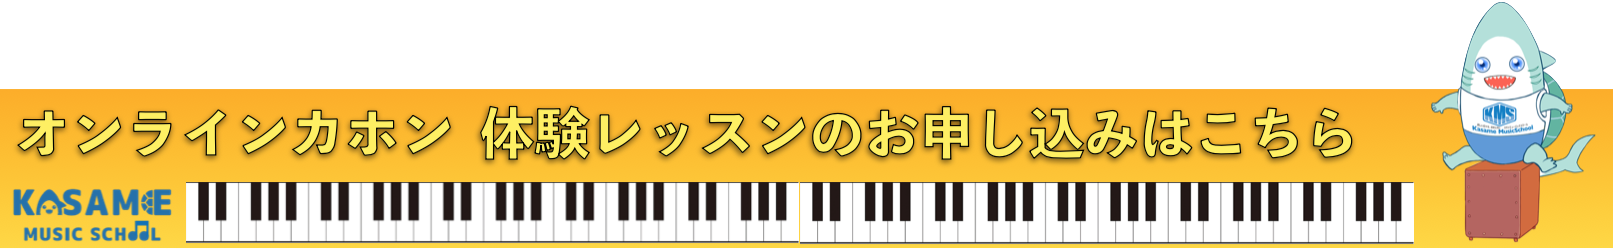 カホン科 Kasame Musicschool